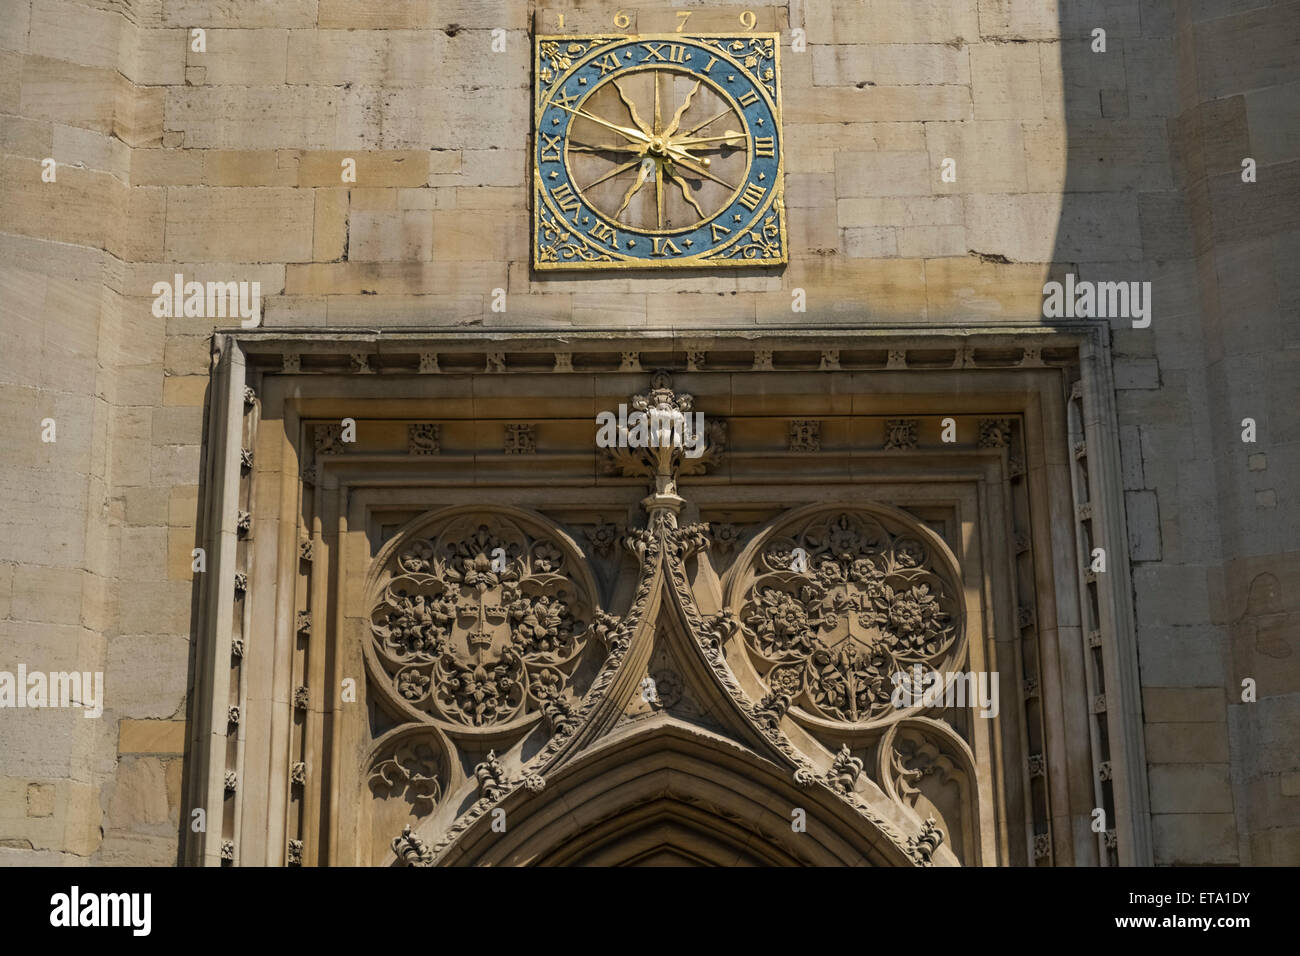 L'horloge de l'église et l'entrée au Grand St Marys Church, St Marys Passage, Cambridge, Angleterre, Royaume-Uni Banque D'Images